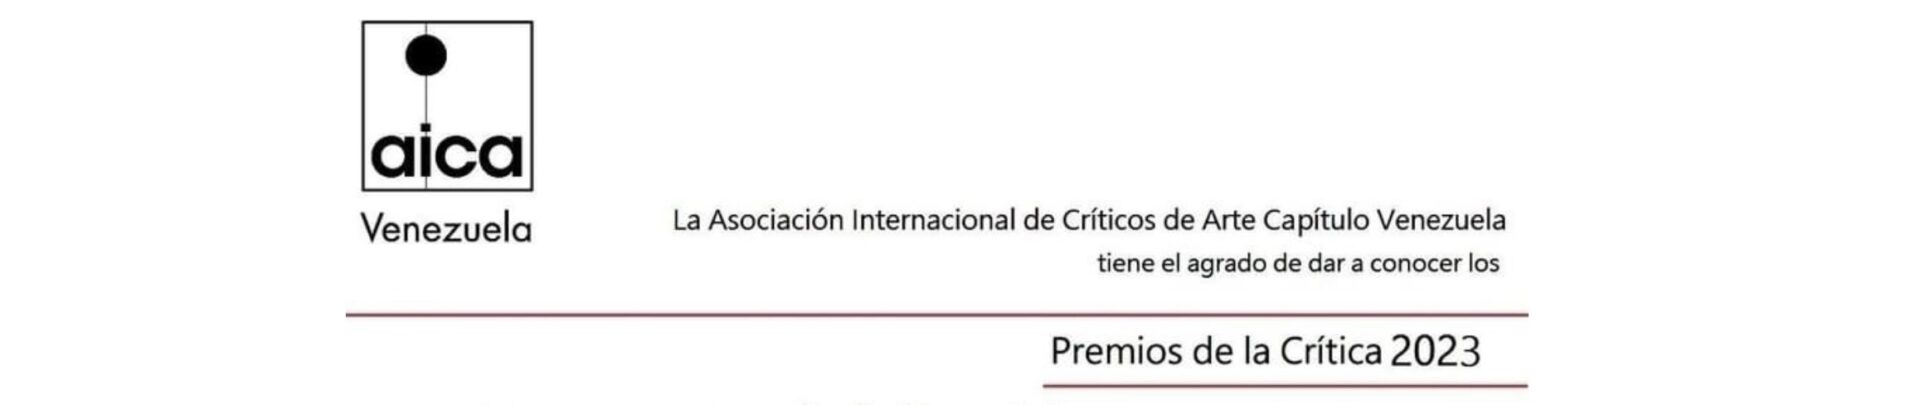 Premios de la Asociación Internacional de Críticos de Arte, Capitulo Venezuela AICA Venezuela 2023